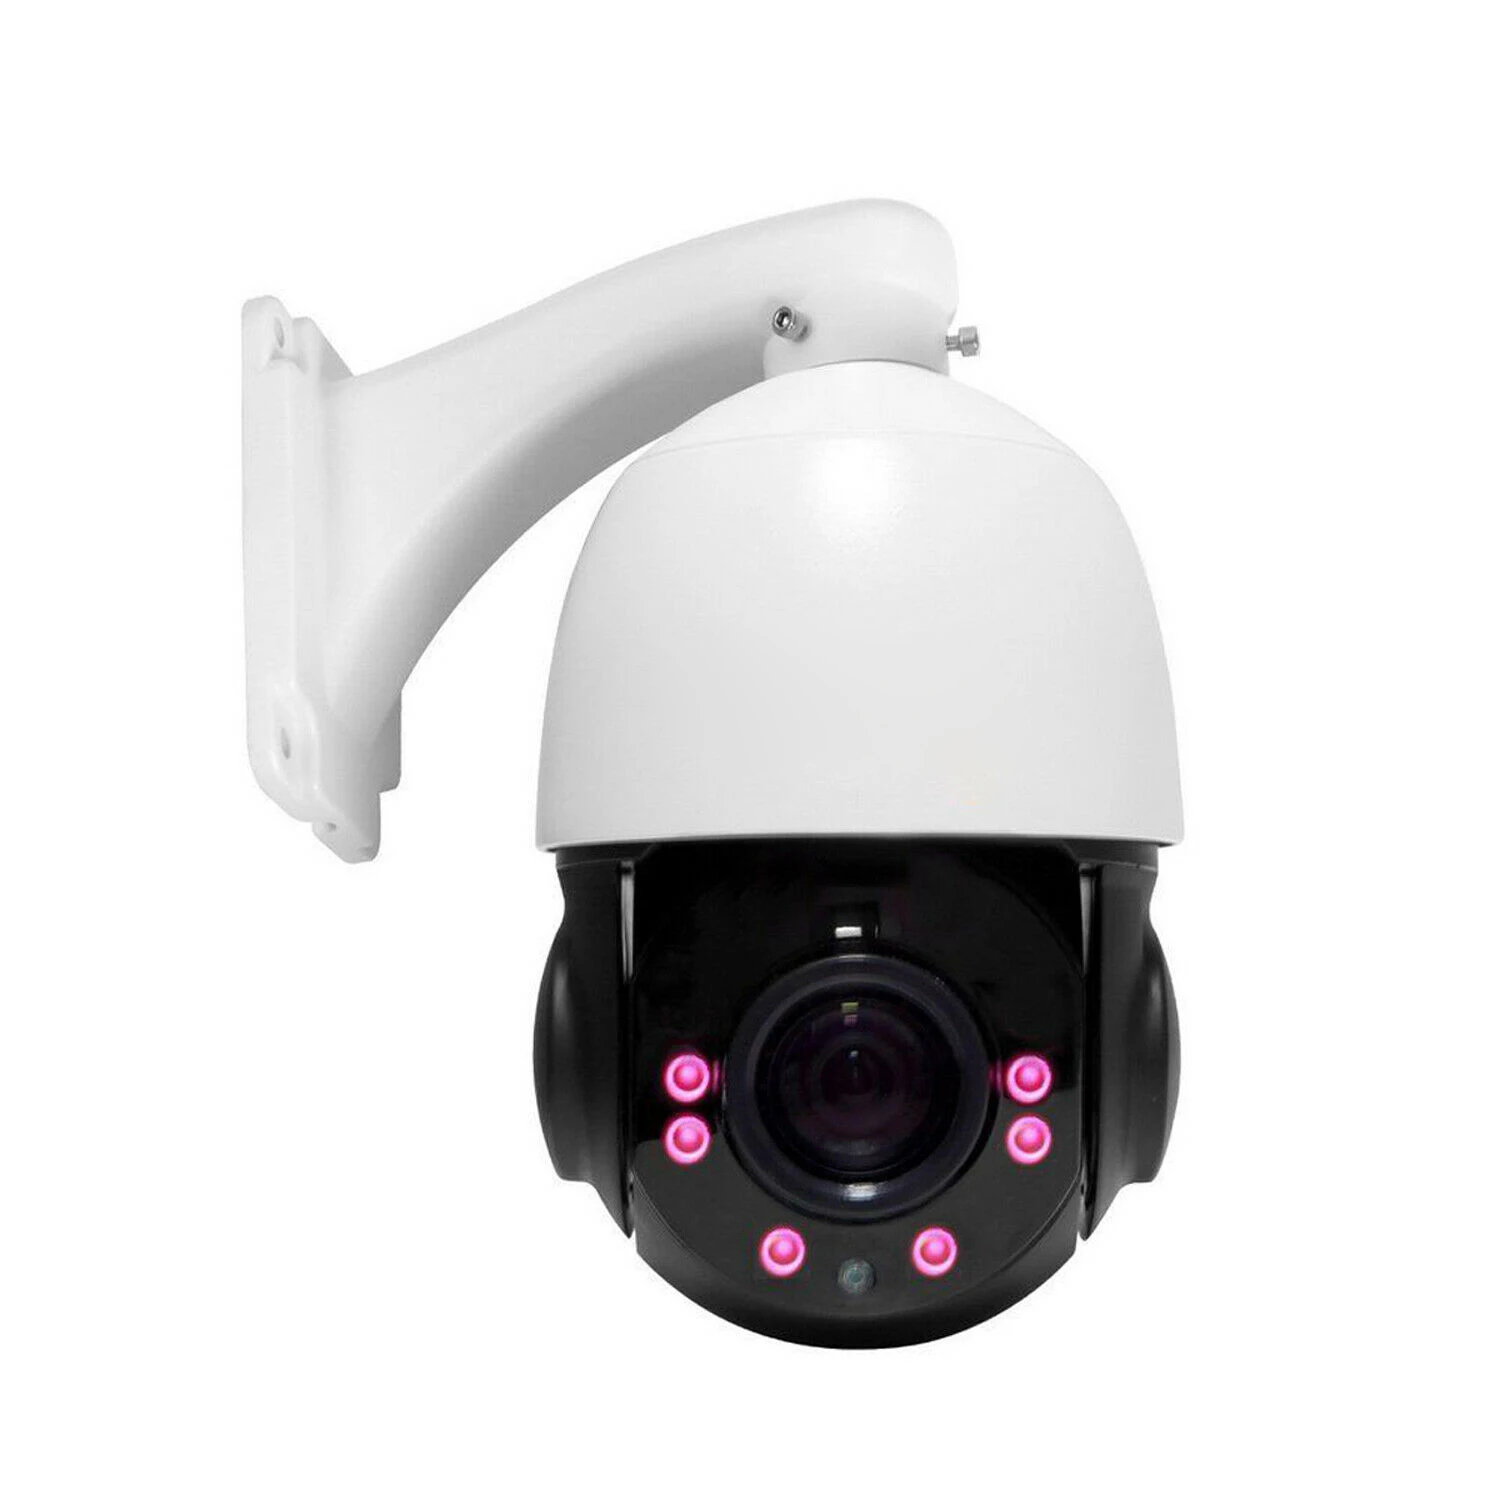 

KIMPOK Onvif SONY Sensor H.264/265+ 2MP 100m IR Nightvision CCTV Security IP PTZ Camera Speed Dome 30X Zoom POE PTZ IP Camera